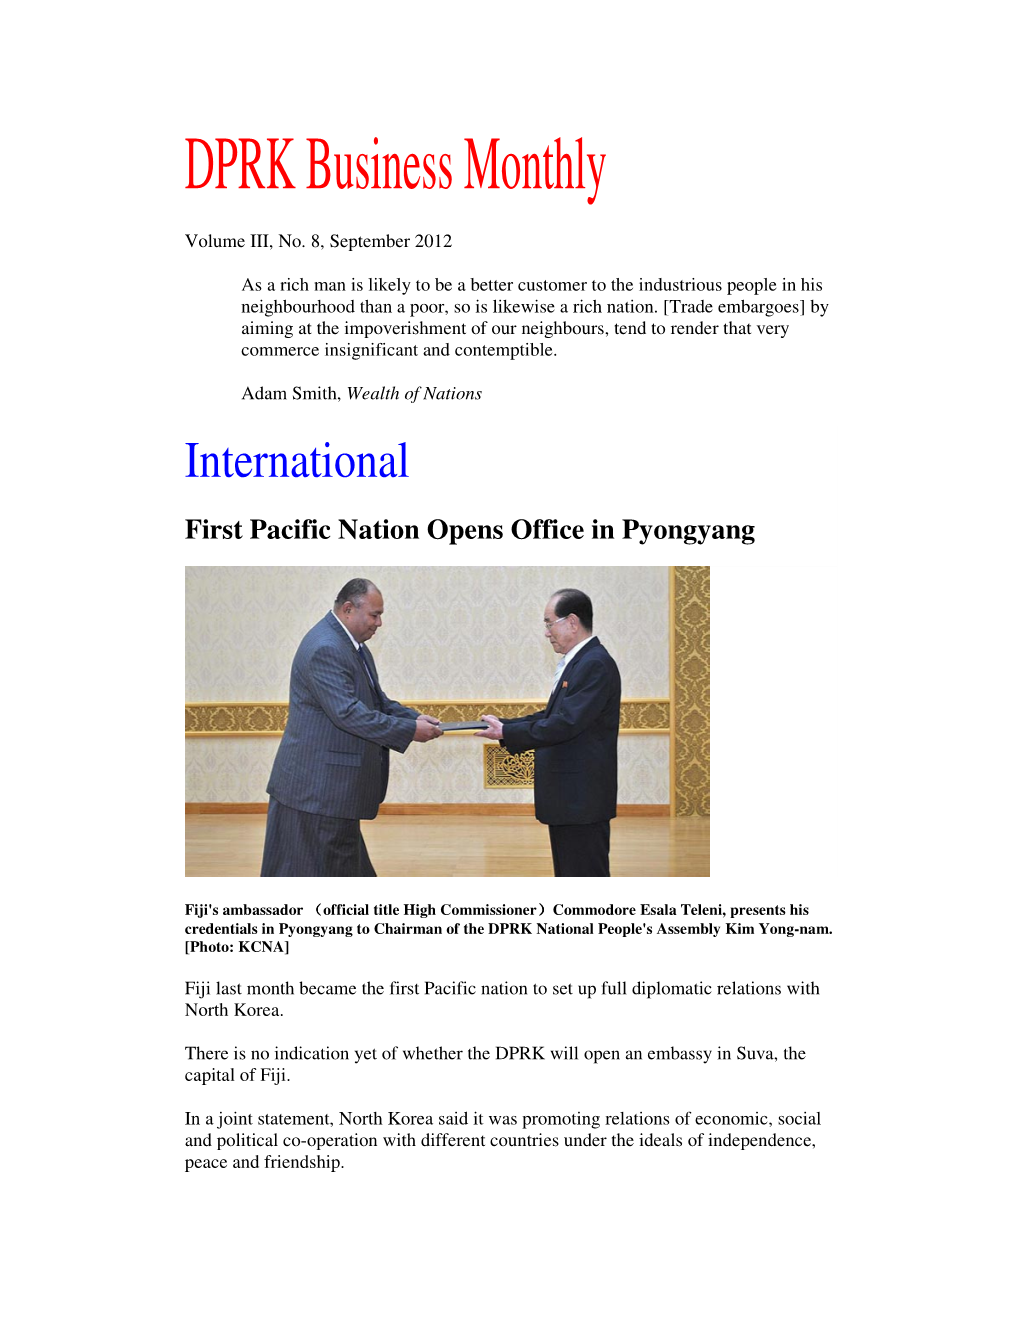 DPRK Business Monthly Volume III, No